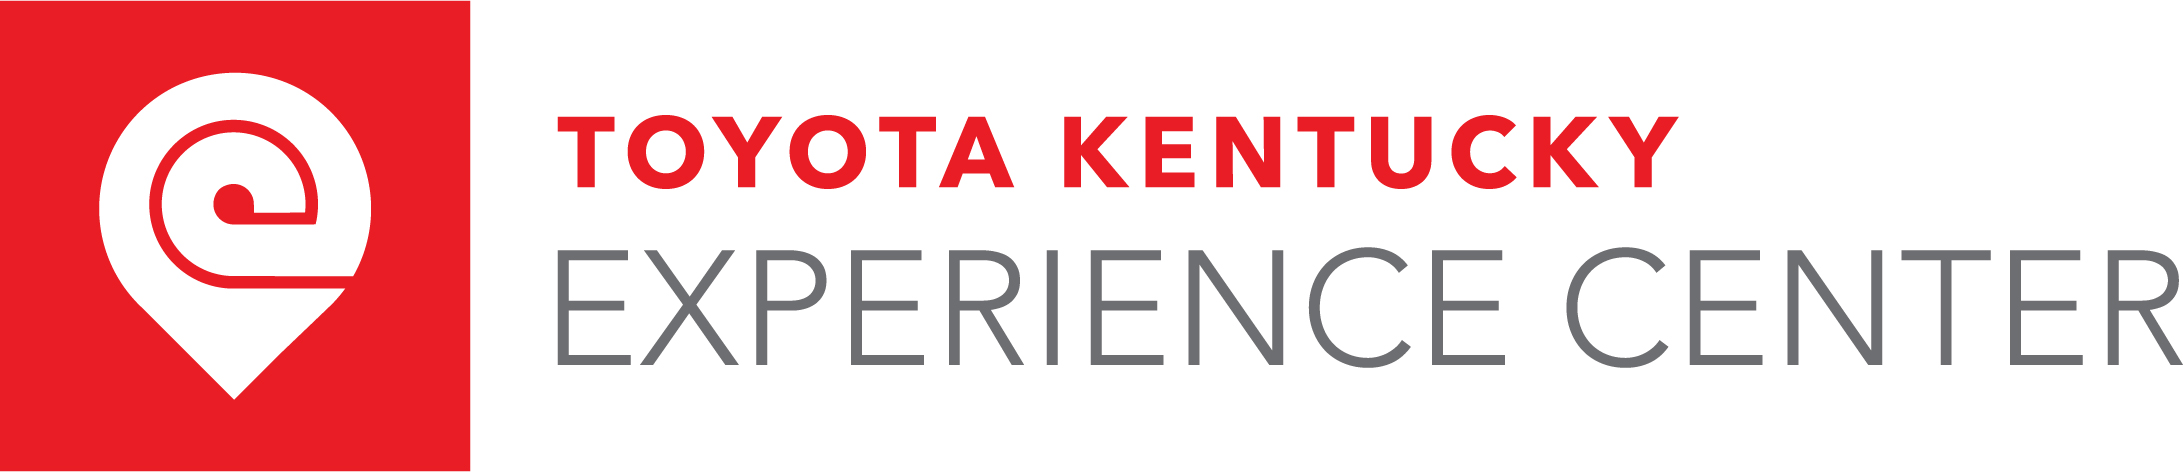 Toyota Kentucky Experience Center logo